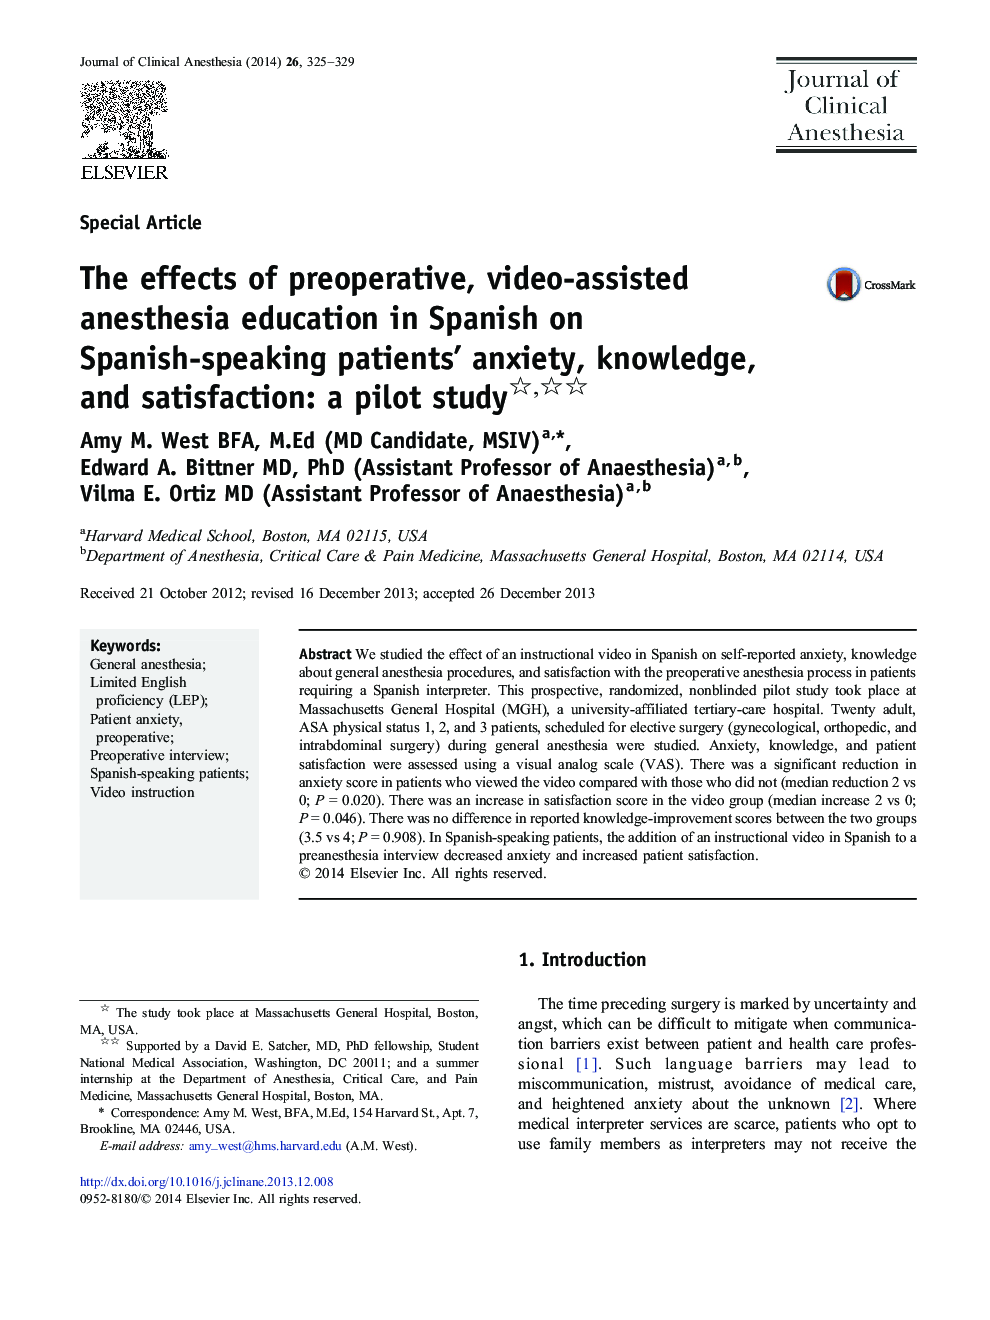 اثرات آموزش بیهوشی قبل از عمل جراحی با استفاده از ویدئو در اسپانیایی در بیمارستان اسپانیایی زبان؟ اضطراب، دانش و رضایت: یک مطالعه آزمایشی یک ؟؟ 